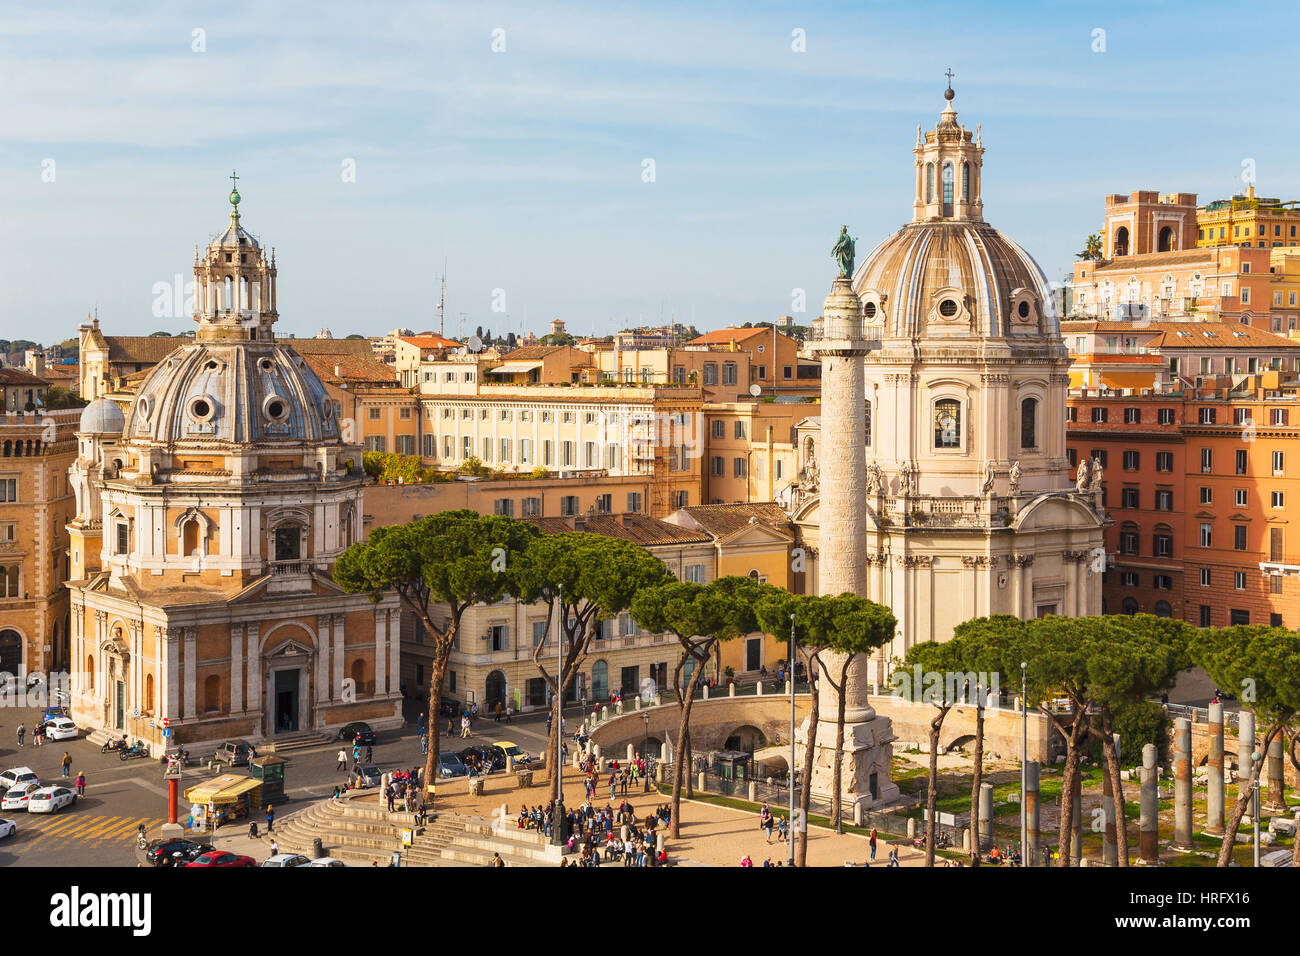 Roma, Italia. Roma, Italia. Piazza della Madonna di Loreto e la Colonna di Traiano. Il centro storico di Roma è un sito Patrimonio Mondiale dell'UNESCO. Foto Stock